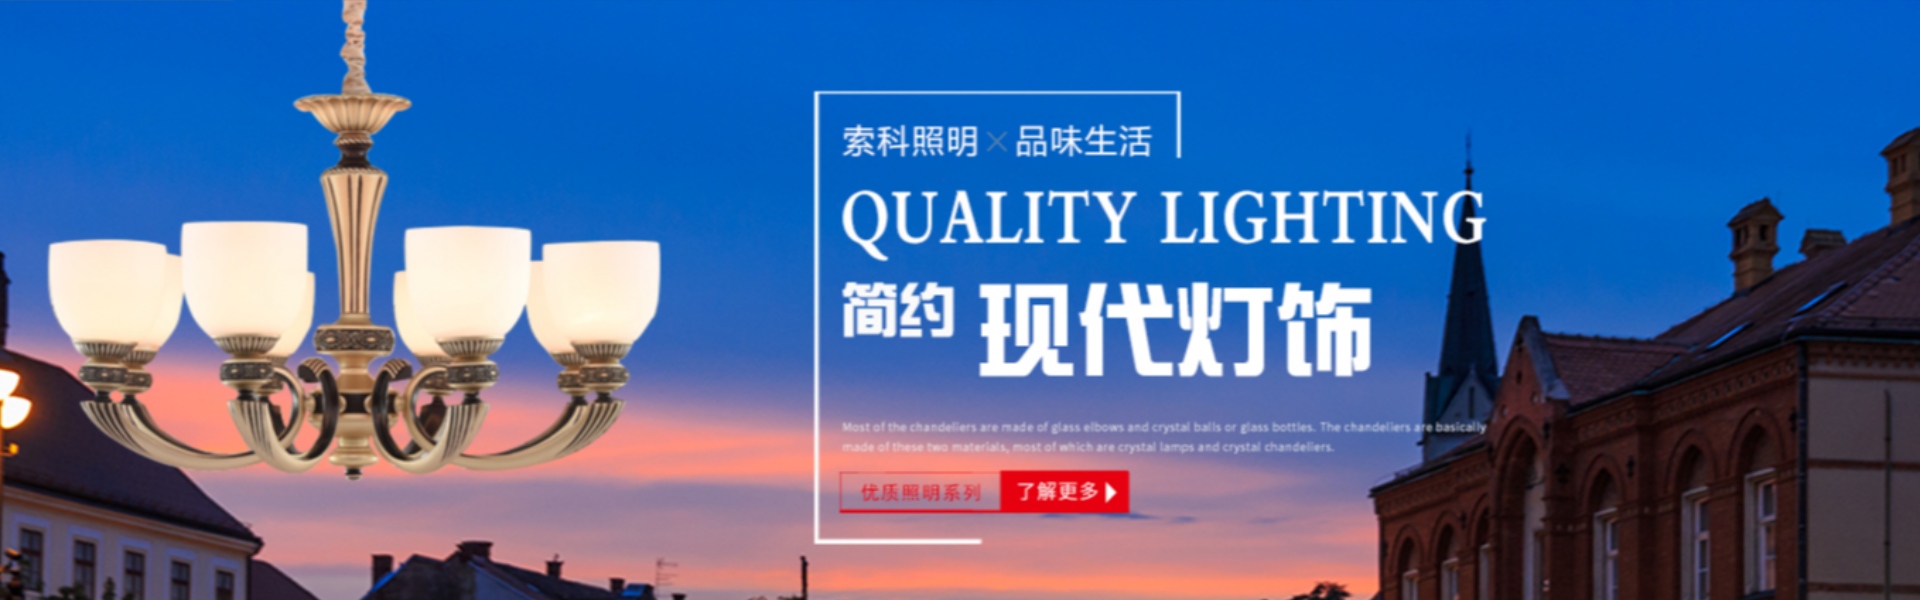 domácí osvětlení, venkovní osvětlení, solární osvětlení,Zhongshan Suoke Lighting Electric Co., Ltd.